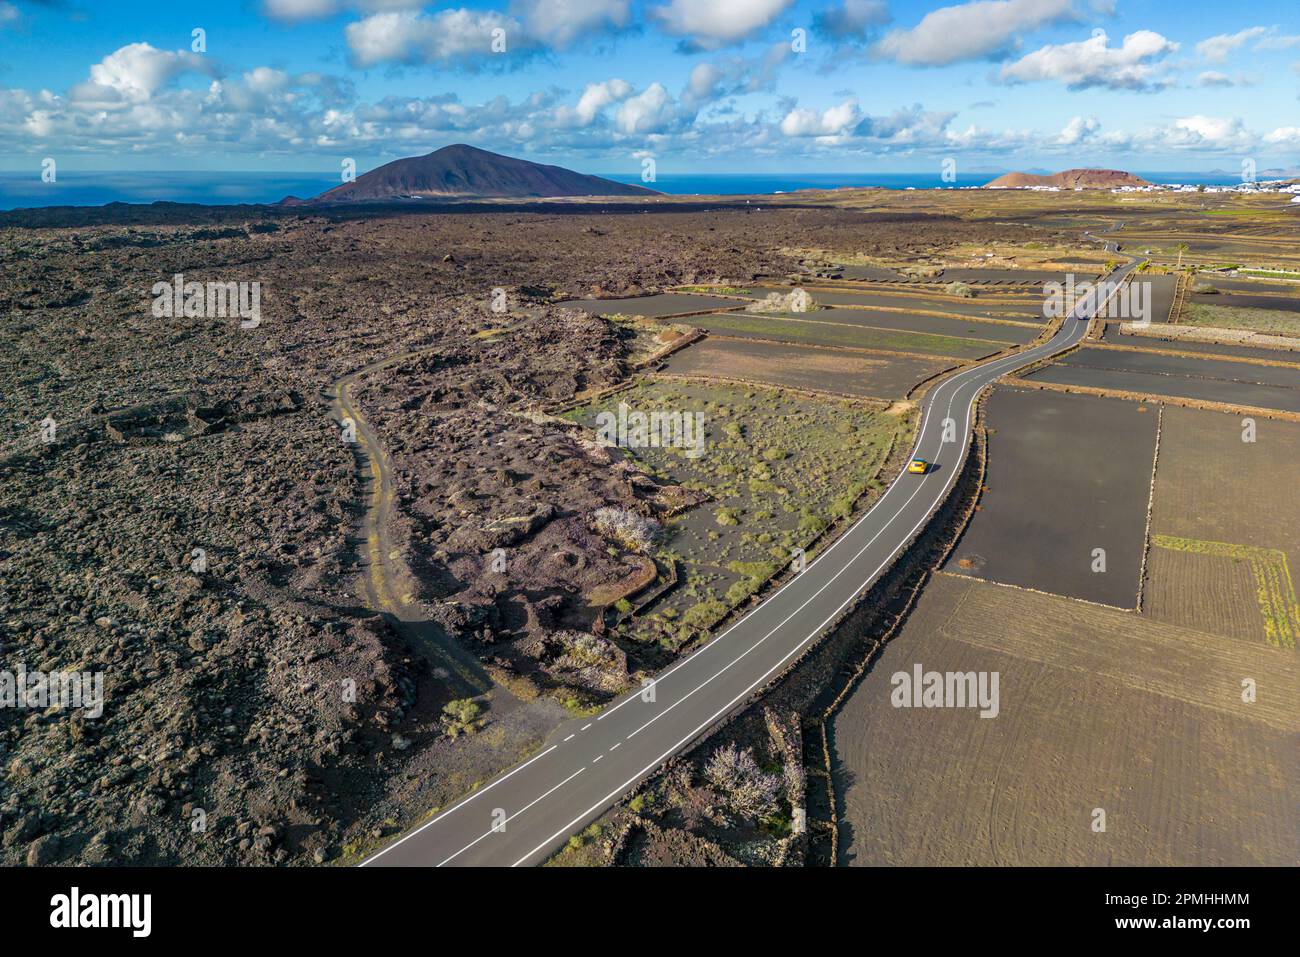 Luftaufnahme der Straße durch vulkanische Landschaft, Timanfaya-Nationalpark, Lanzarote, Las Palmas, Kanarische Inseln, Spanien, Atlantik, Europa Stockfoto